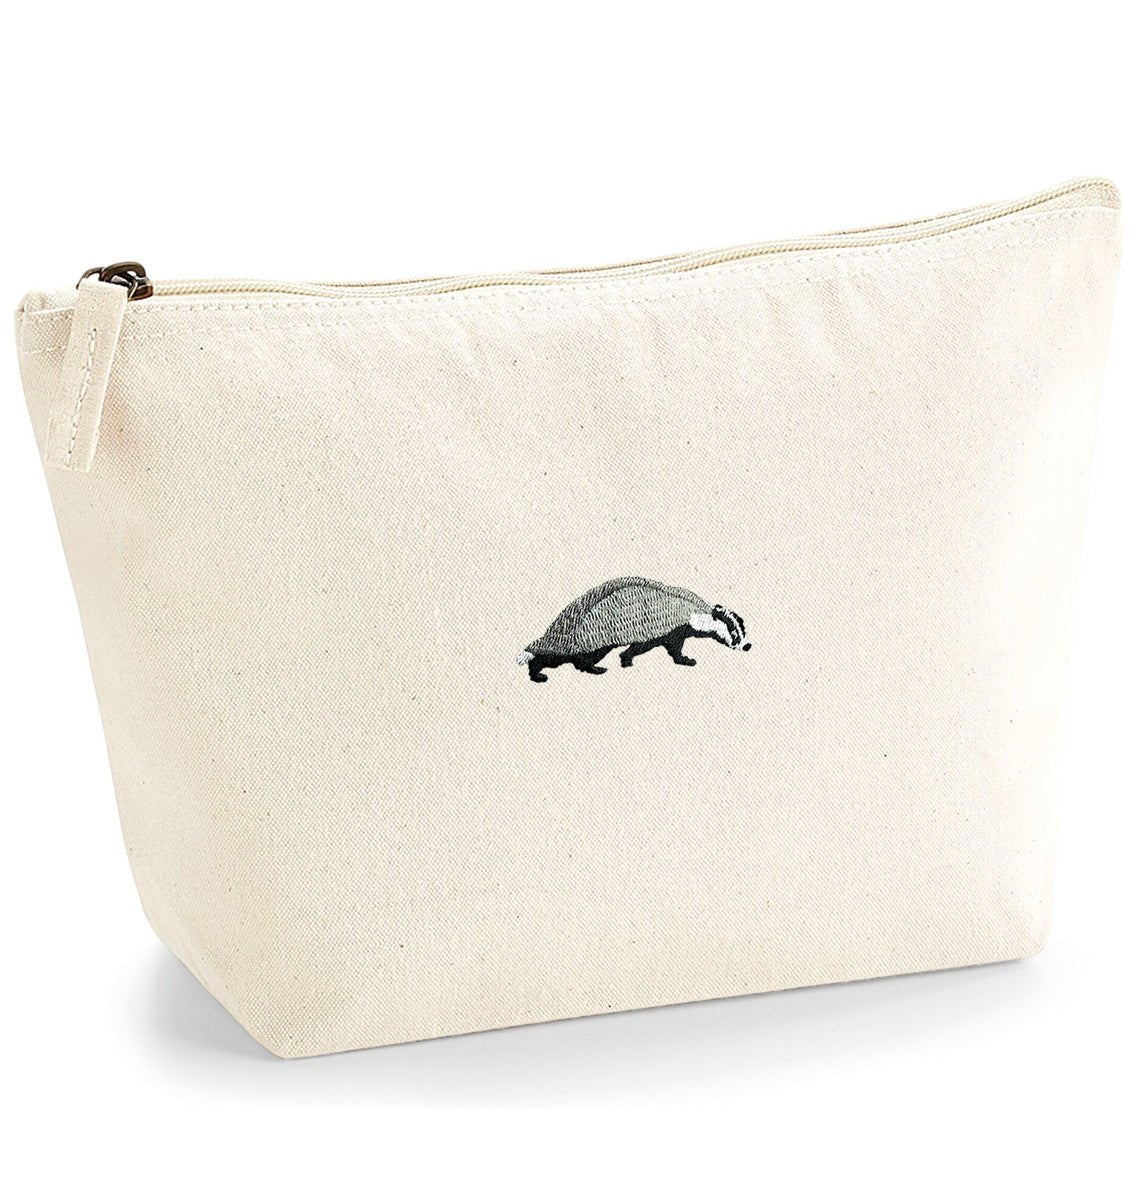 Badger Organic Accessory Bag - Blue Panda